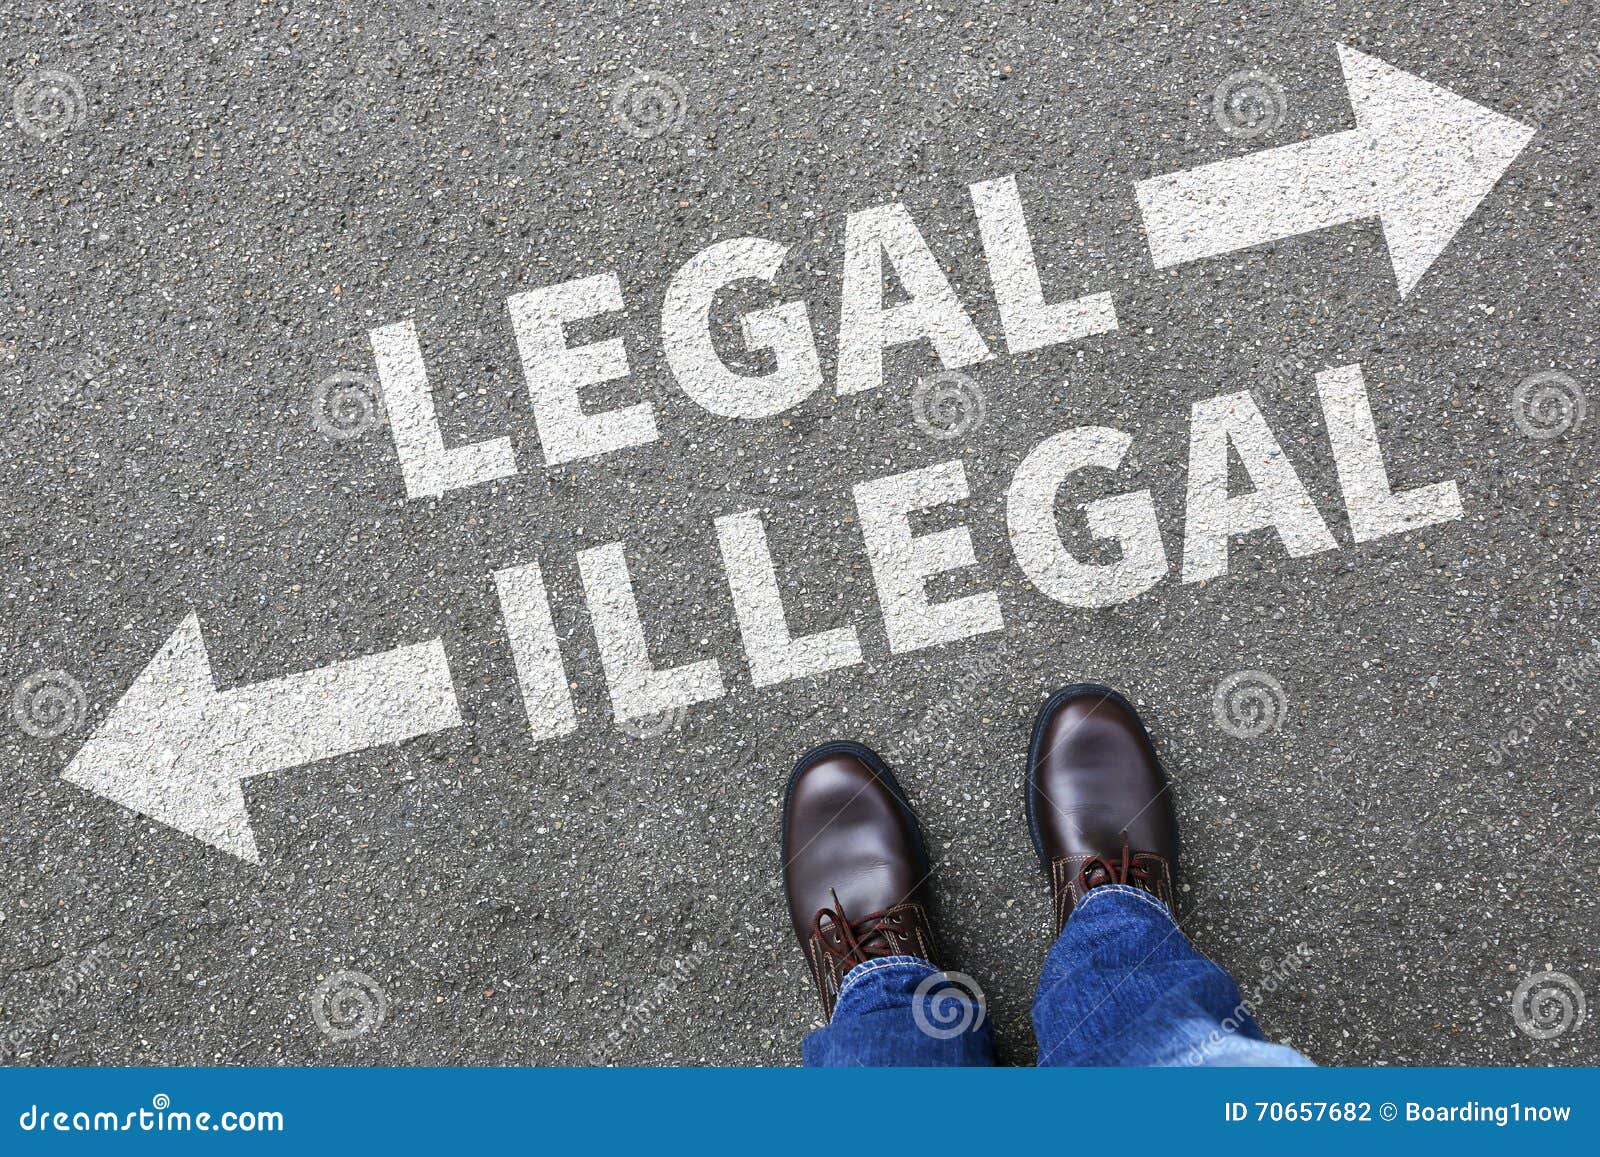 legal illegal businessman business man concept decision prohibit